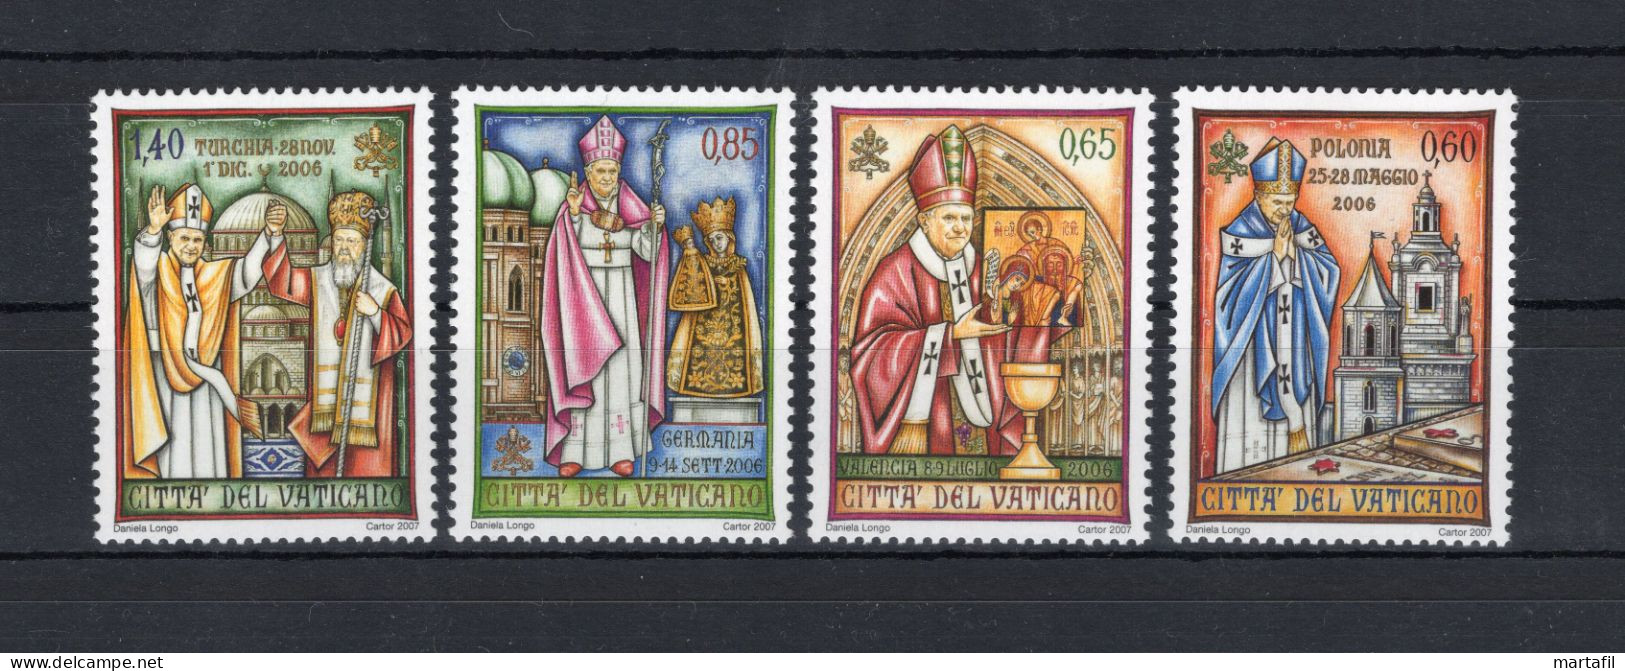 2007 VATICANO SET MNH ** 1454/1457 I Viaggi Del Papa Benedetto XVI - Unused Stamps